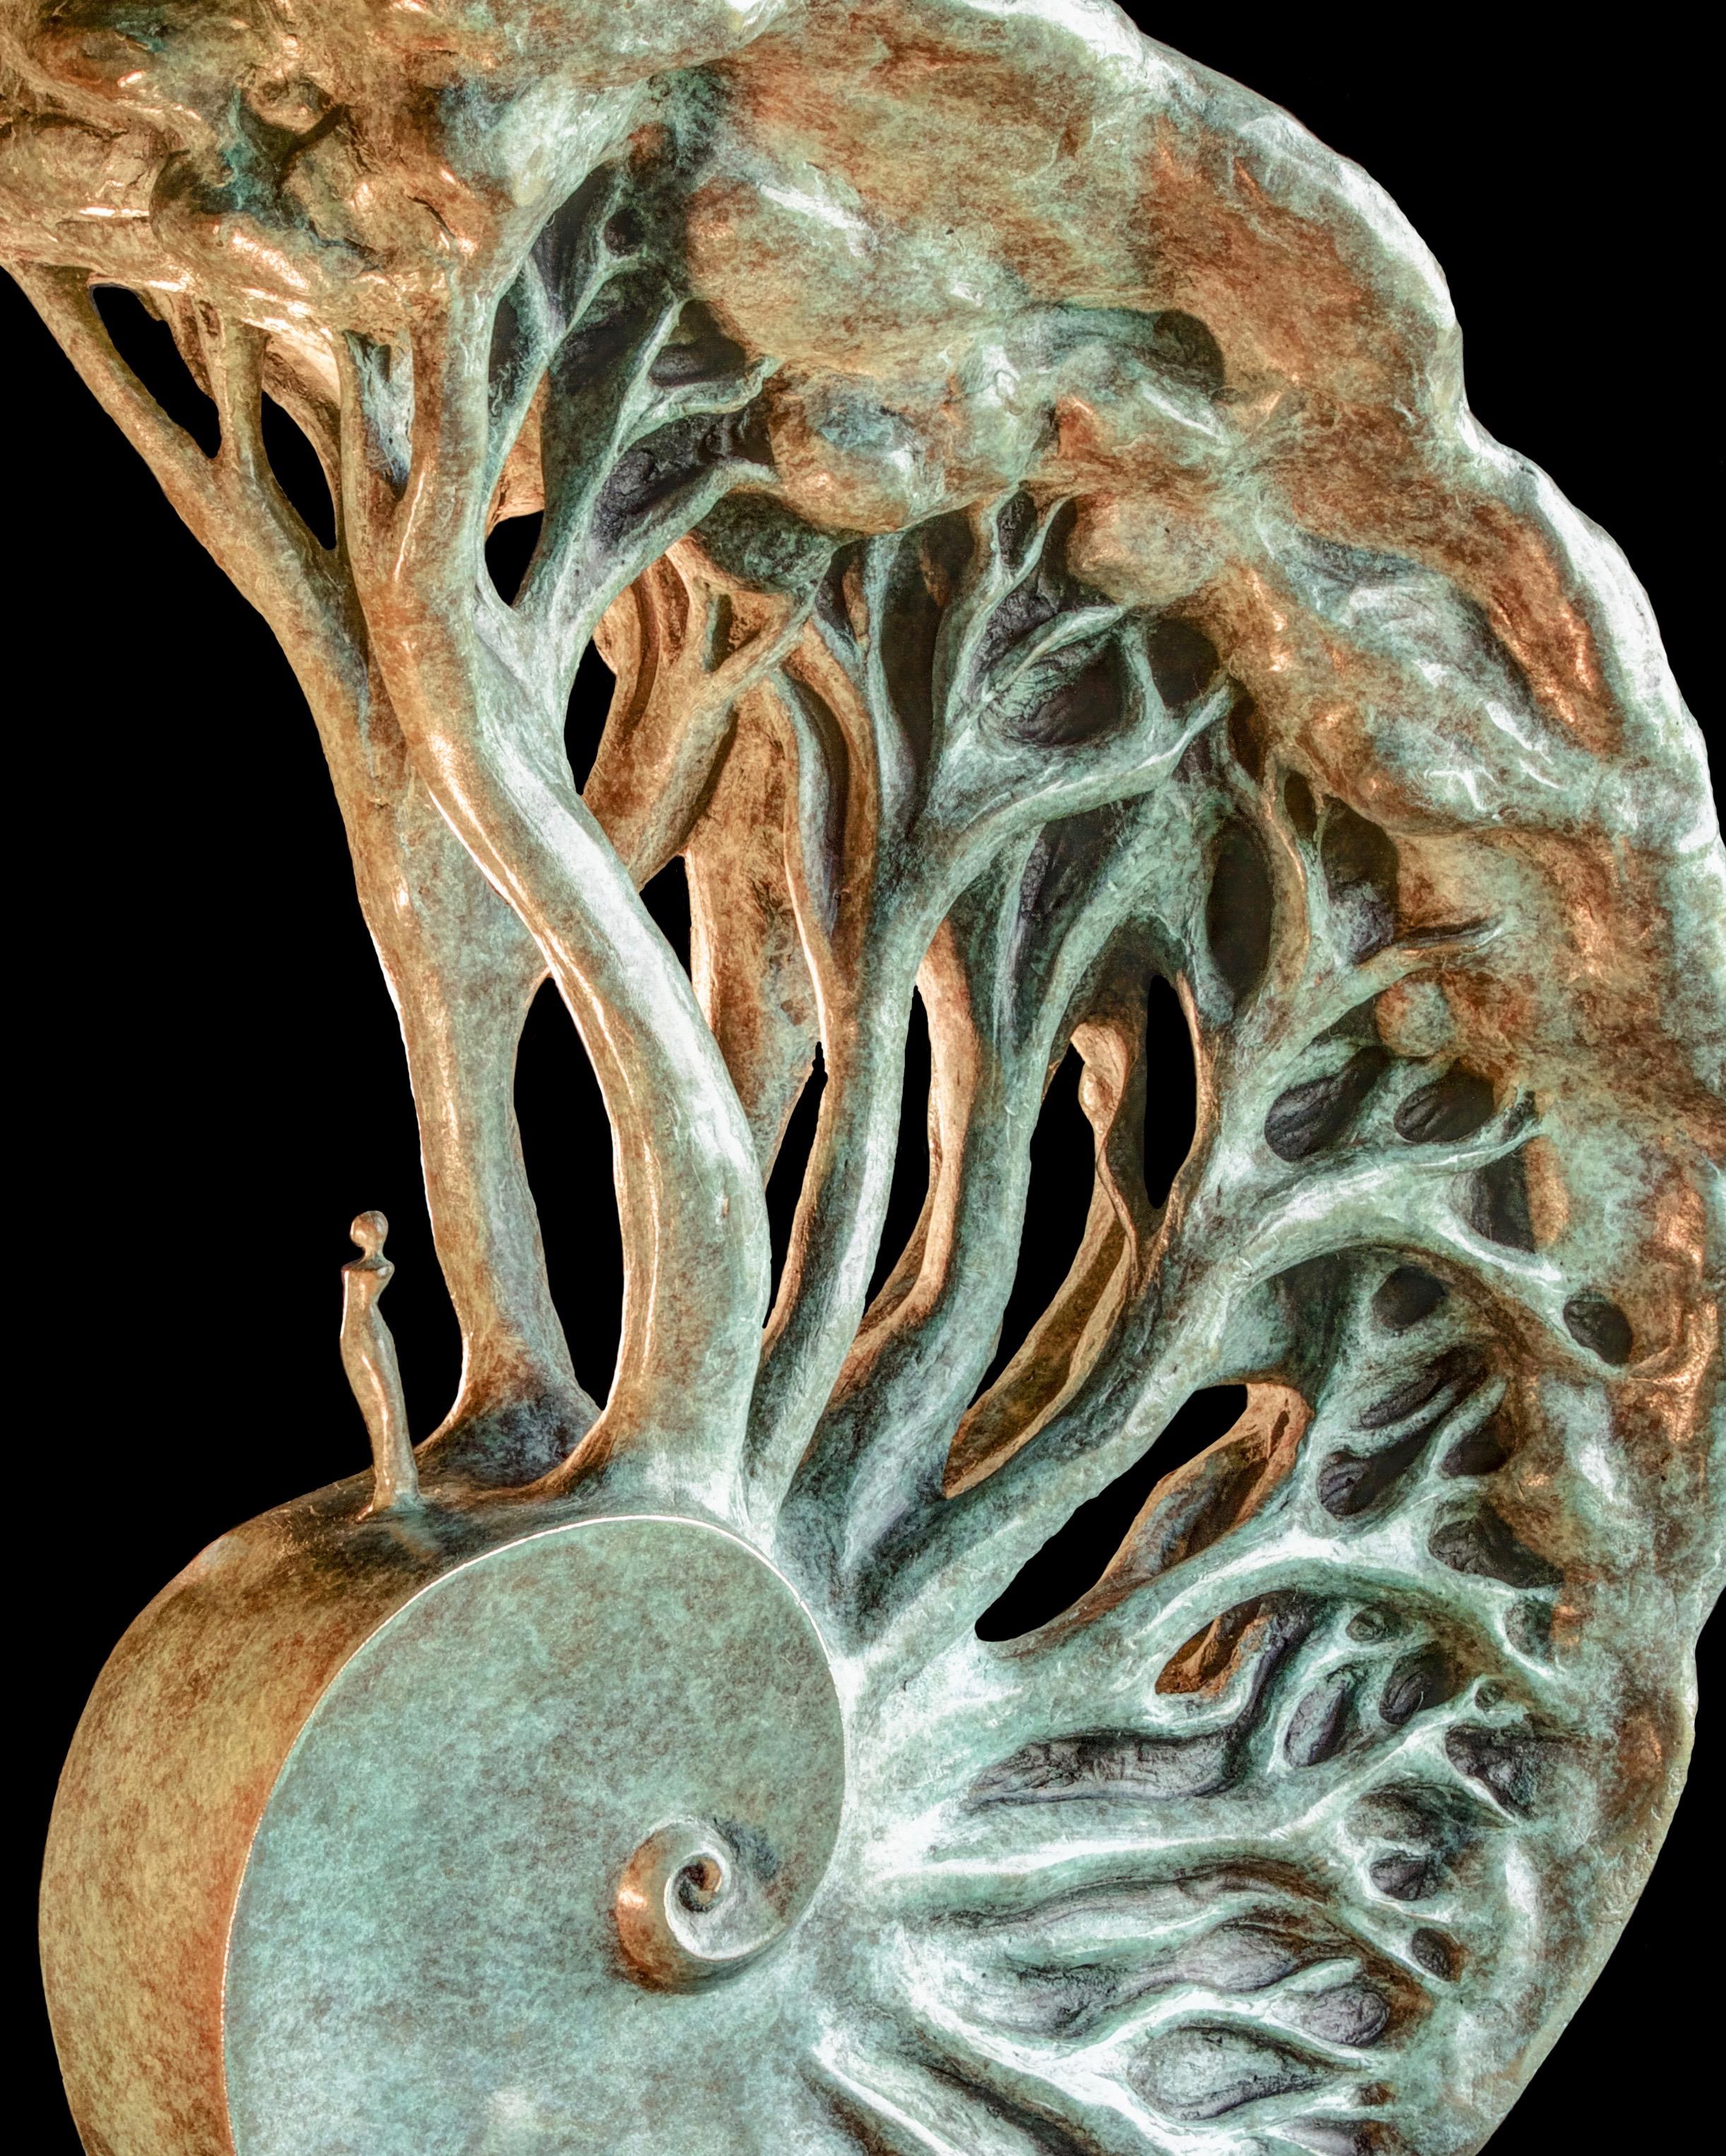 Diese figurative und symbolistische Bronzeskulptur von Isabelle Jeandot stellt eine Spirale mit der Goldenen Zahl dar, eine Pflanzenallegorie, die das Auftauchen unserer alten, in unsere DNA eingeschriebenen Erinnerungen symbolisiert.

Die